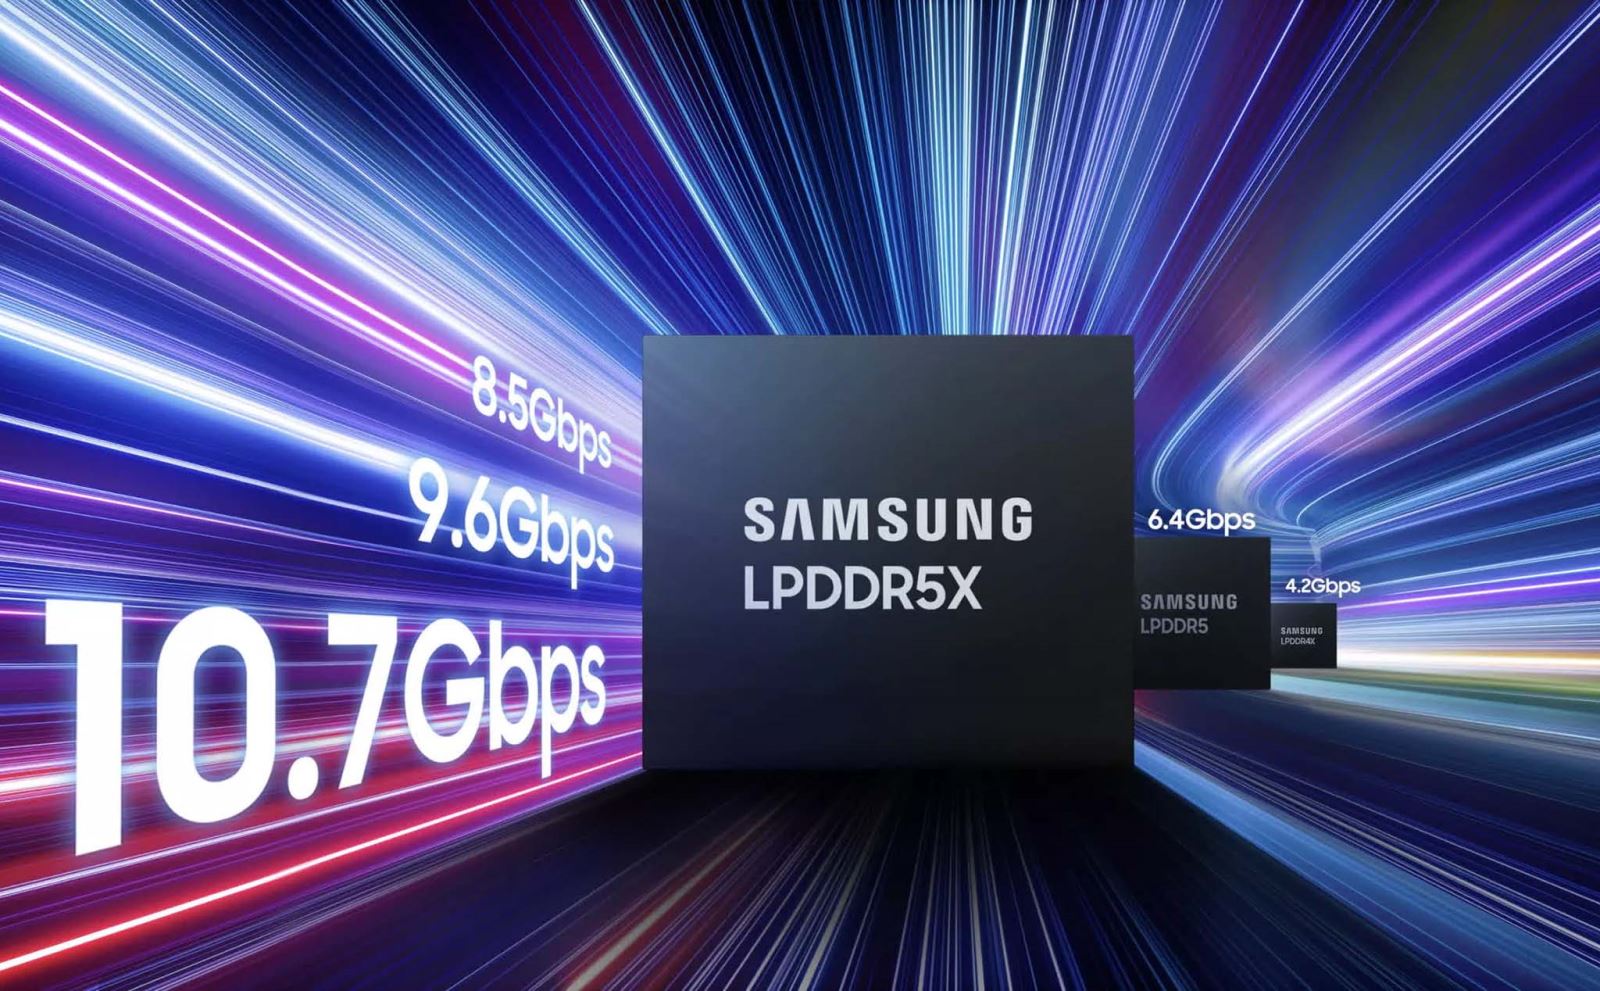 Samsung phát triển bộ nhớ LPDDR5X DRAM nhanh nhất ngành với tốc độ 10.7Gbps, tối ưu hóa cho các ứng dụng AI